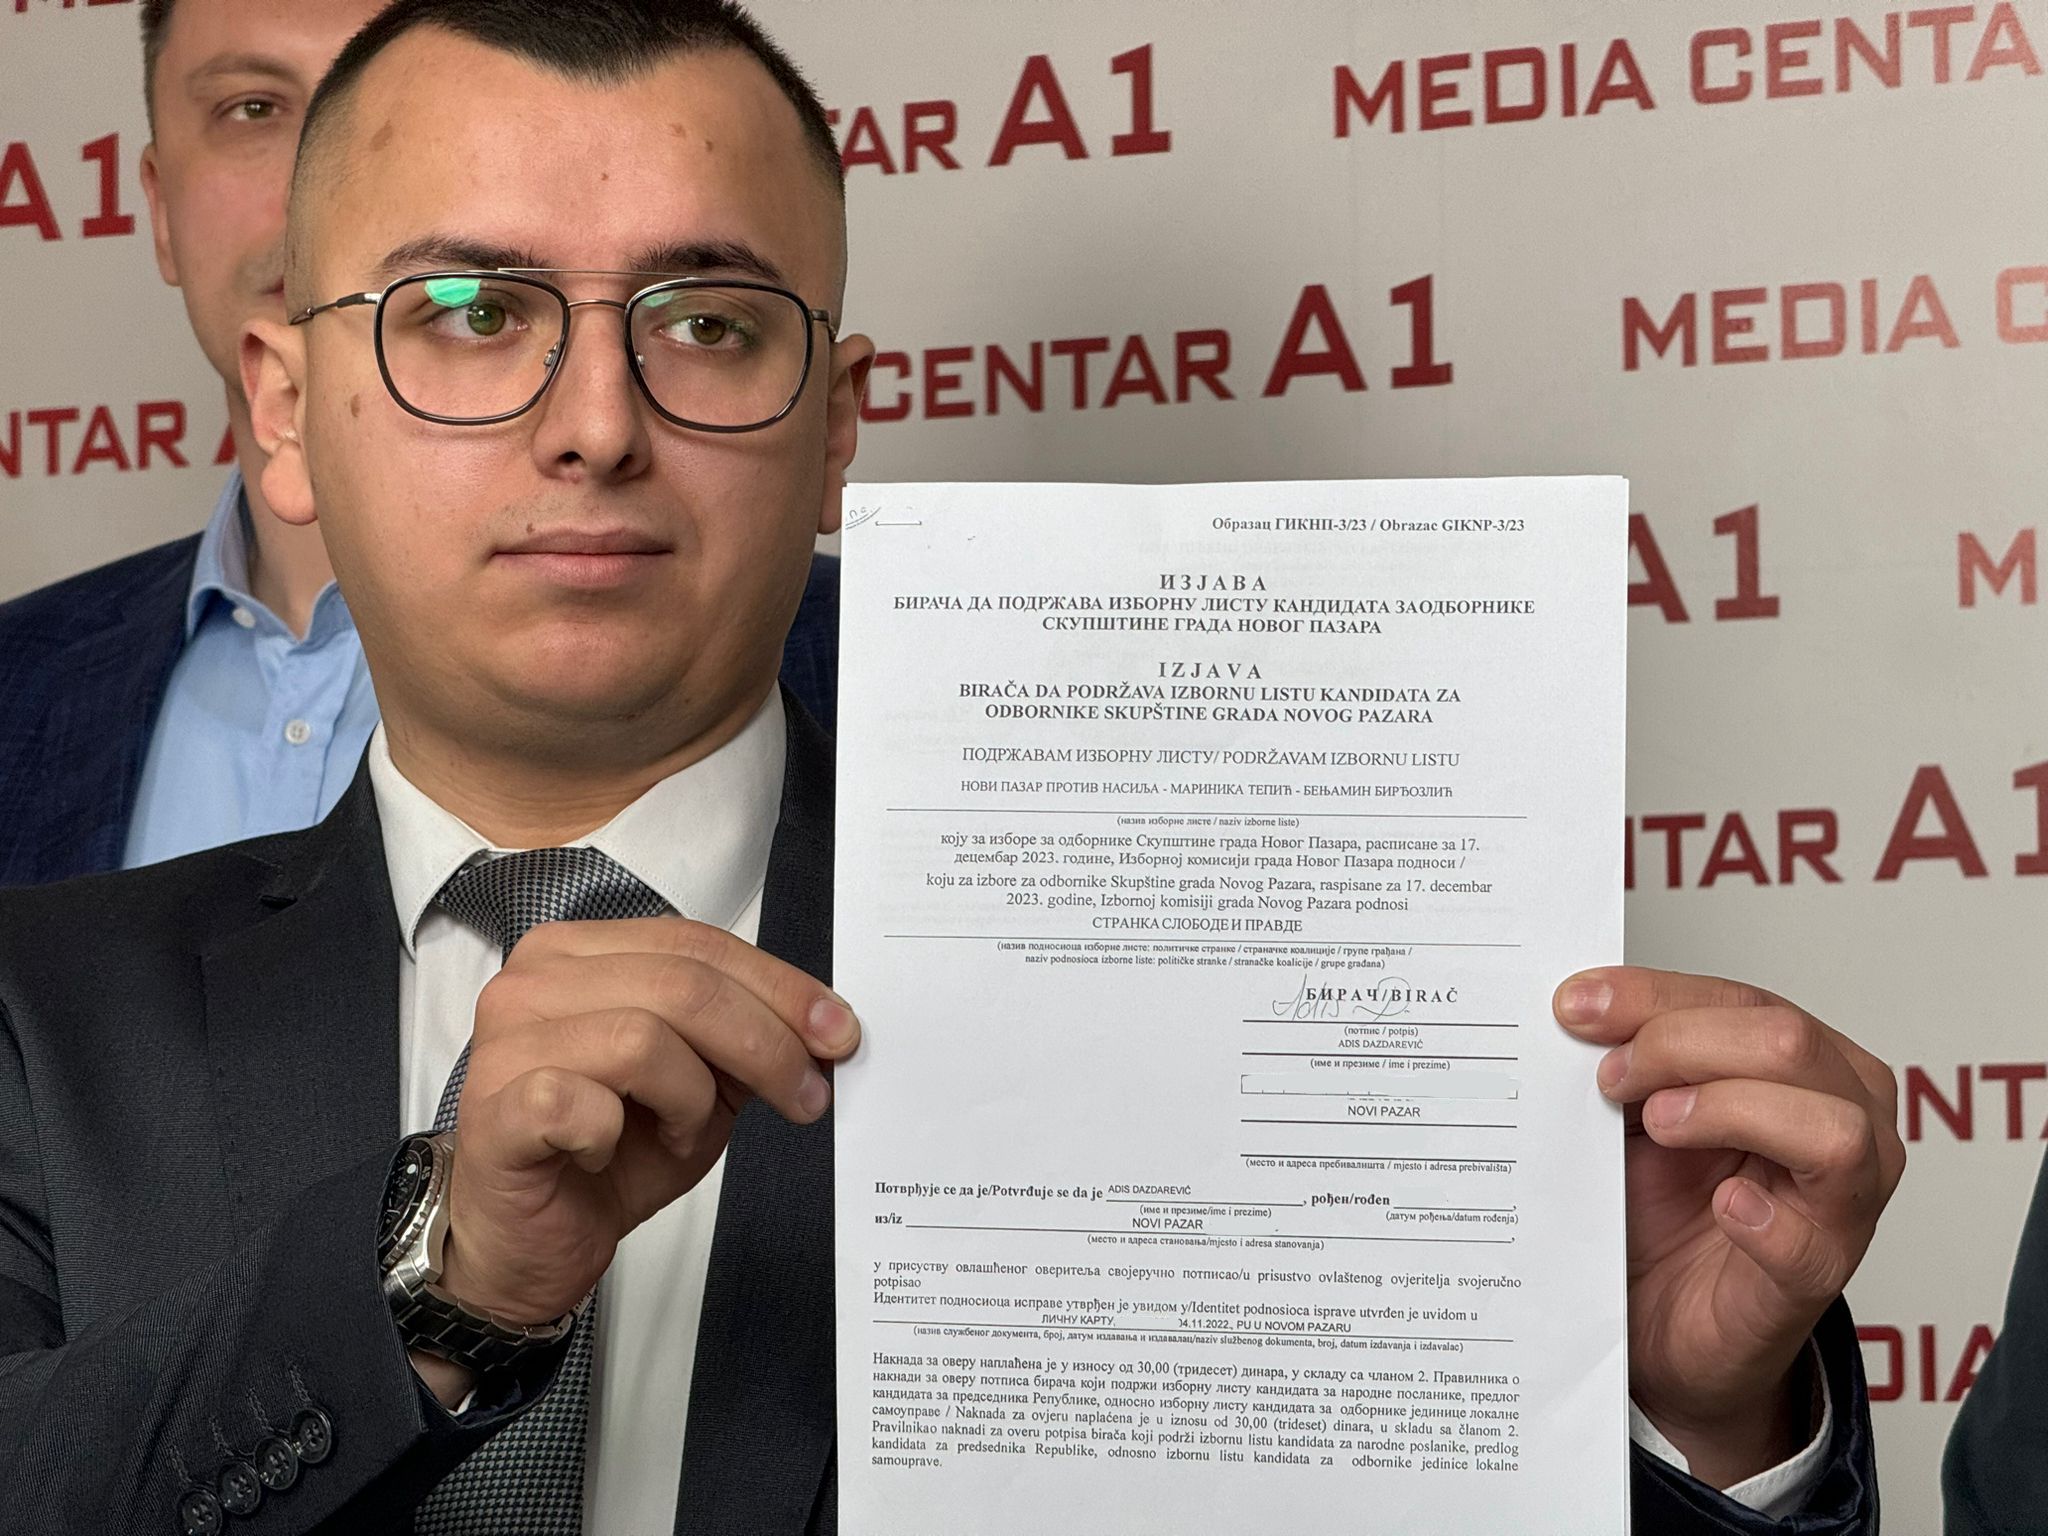 Adis Dazdarević: “Falsifikovali su moj potpis“ (VIDEO)